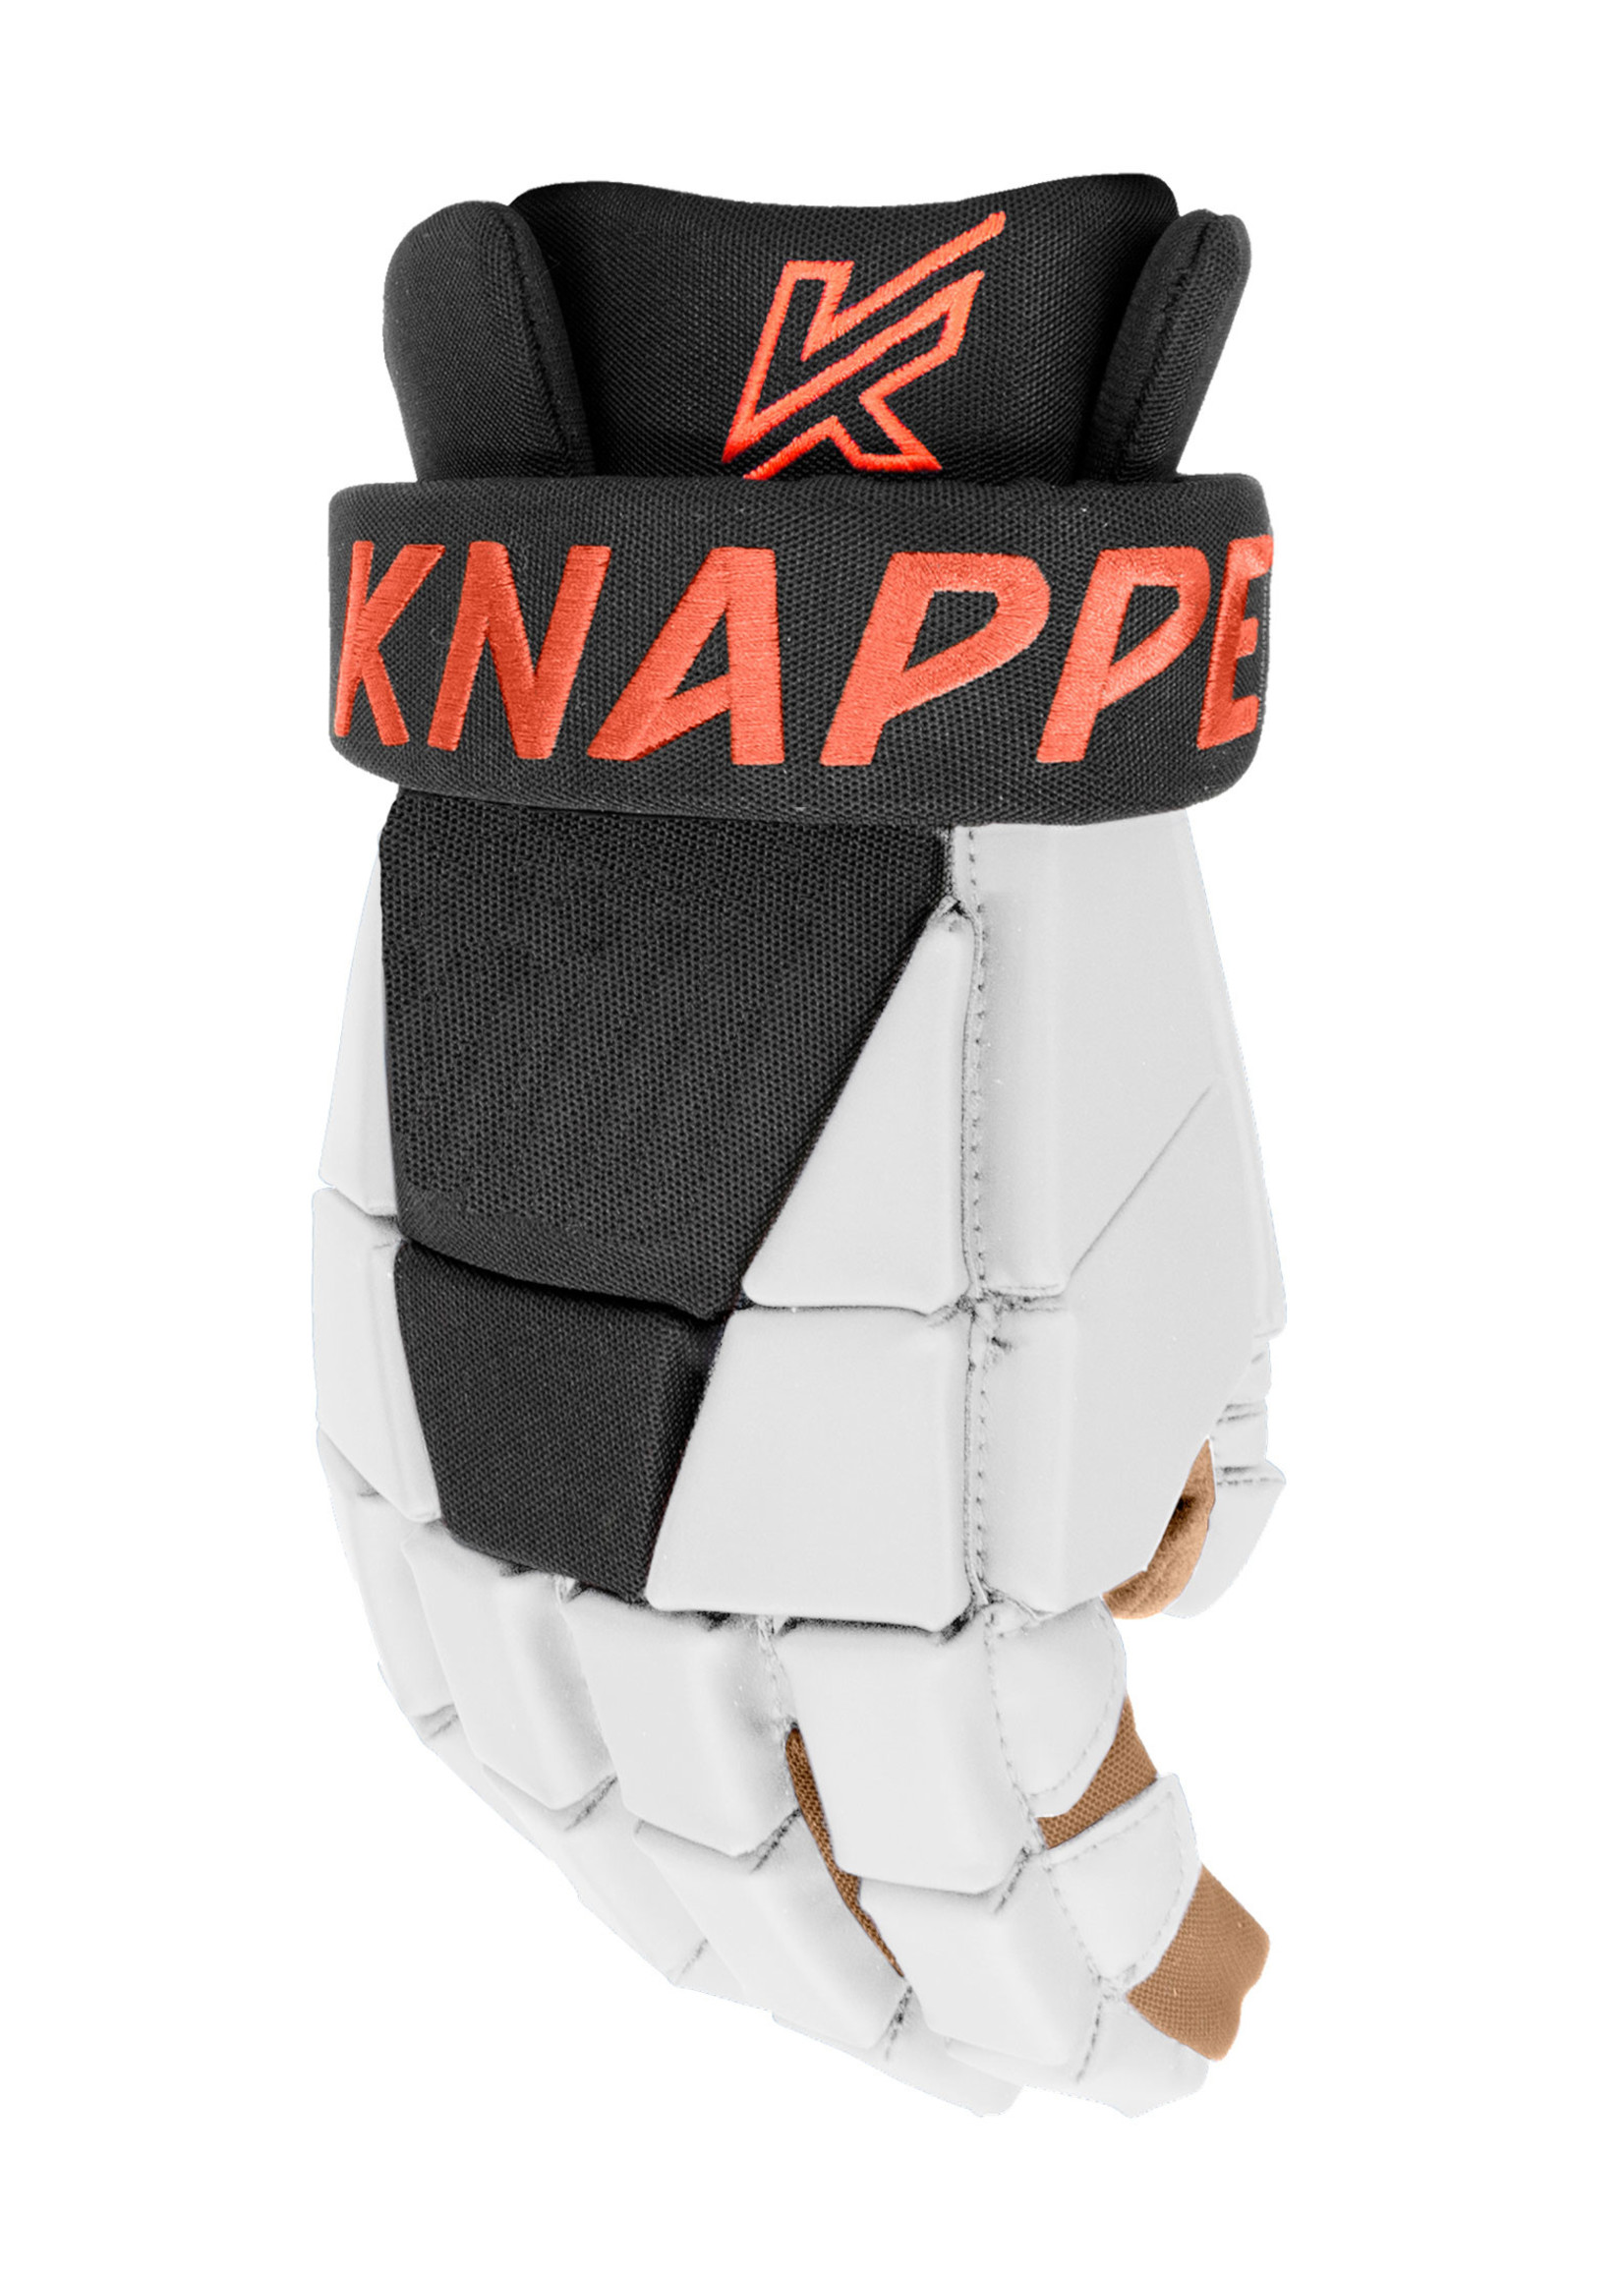 Knapper KNAPPER AK3 JR GLOVES